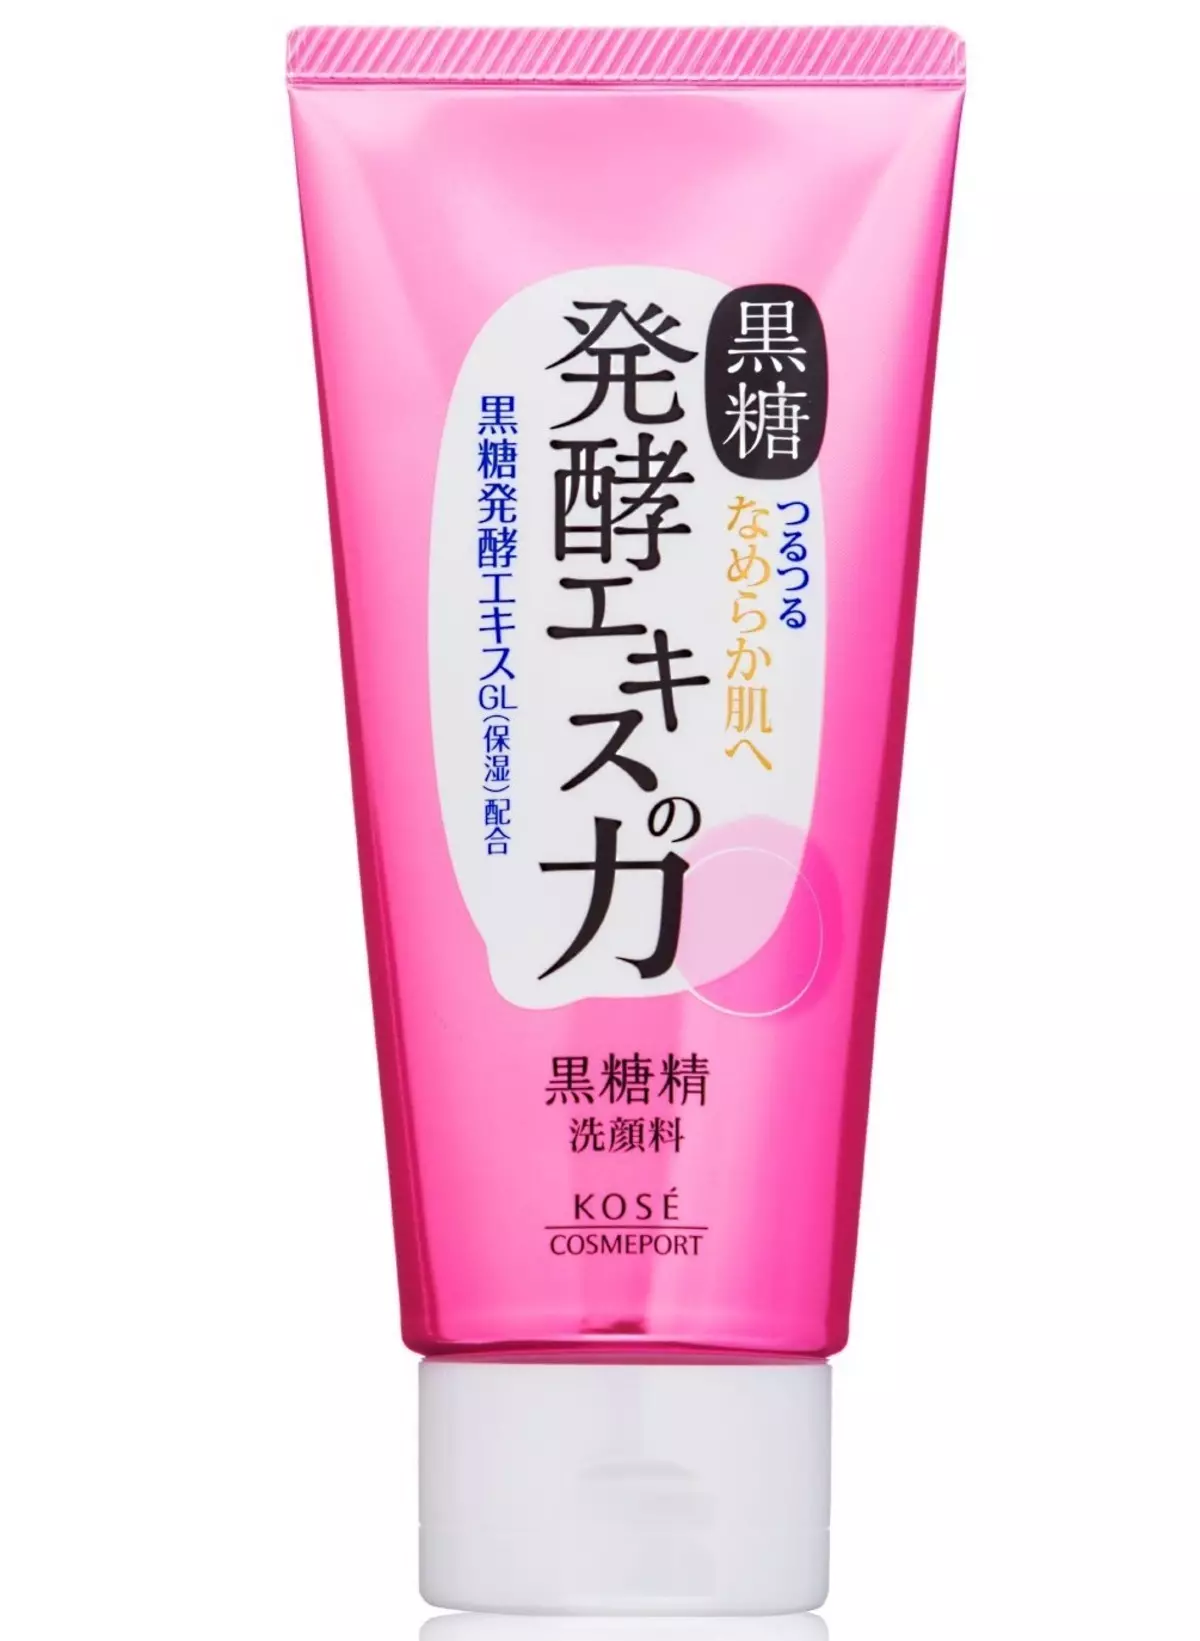 Japonijos kosmetika: geriausi kosmetikos prekės ženklai iš Japonijos. Rozetė, Kosai ir kita profesionali kosmetika. Atsiliepimai apie kosmetologai. 4498_37